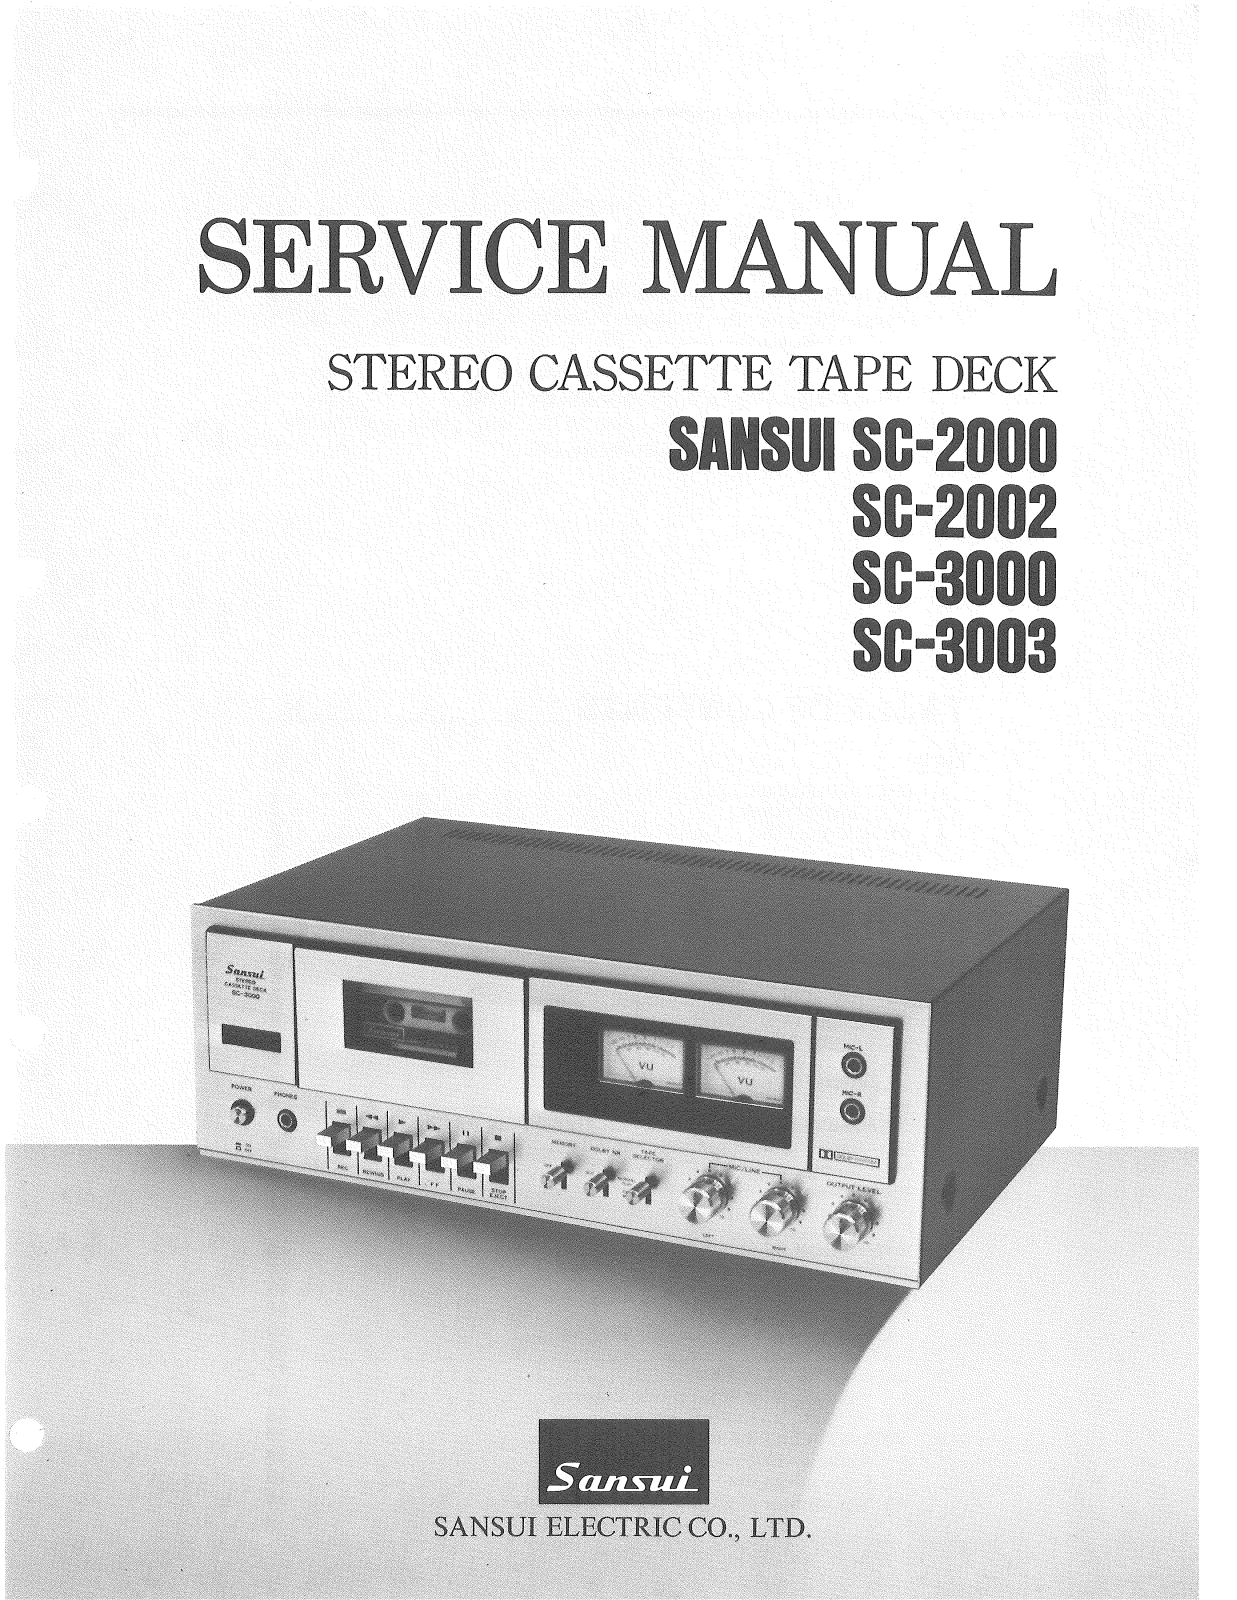 Sansui SC-2000, SC-2002, SC-3000, SC-3003 Service manual